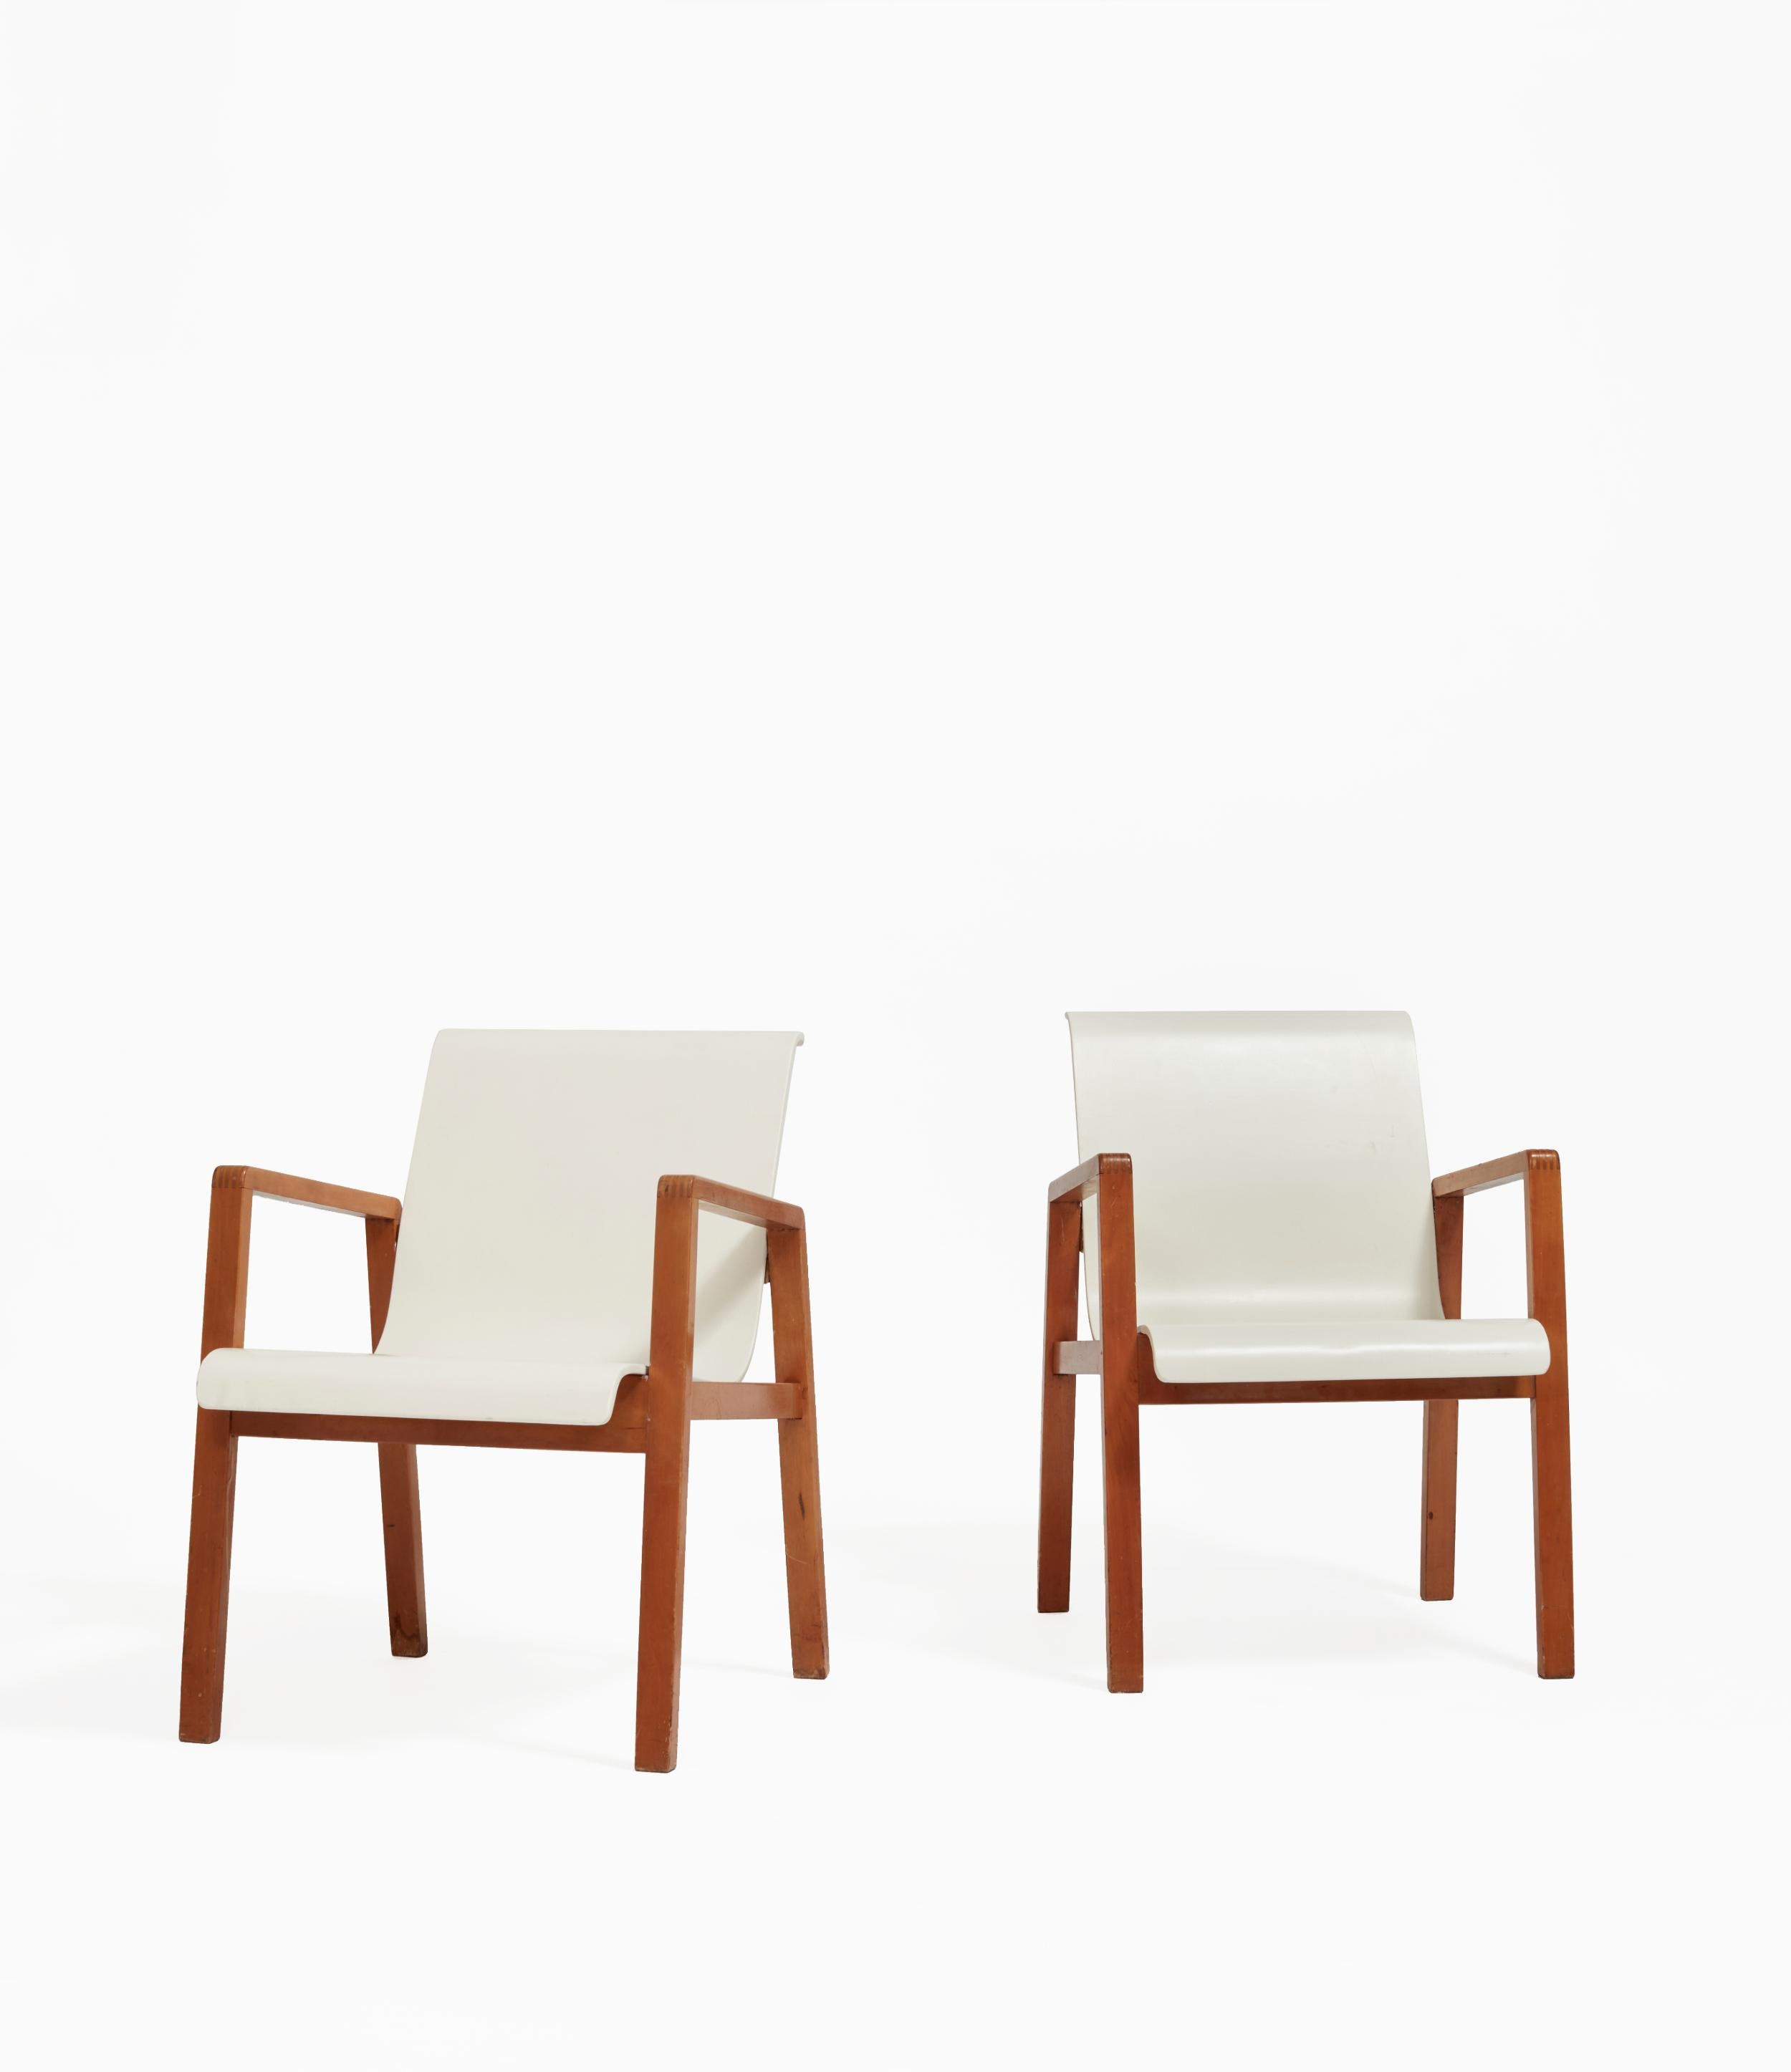 Le modèle 403, ou Hallway Chair, est une chaise empilable conçue à l'origine pour un centre médical finlandais en 1932. Le modernisme finlandais trouve son motif structurel dans la forme du Model 403, composé de bois de bouleau massif et de placage